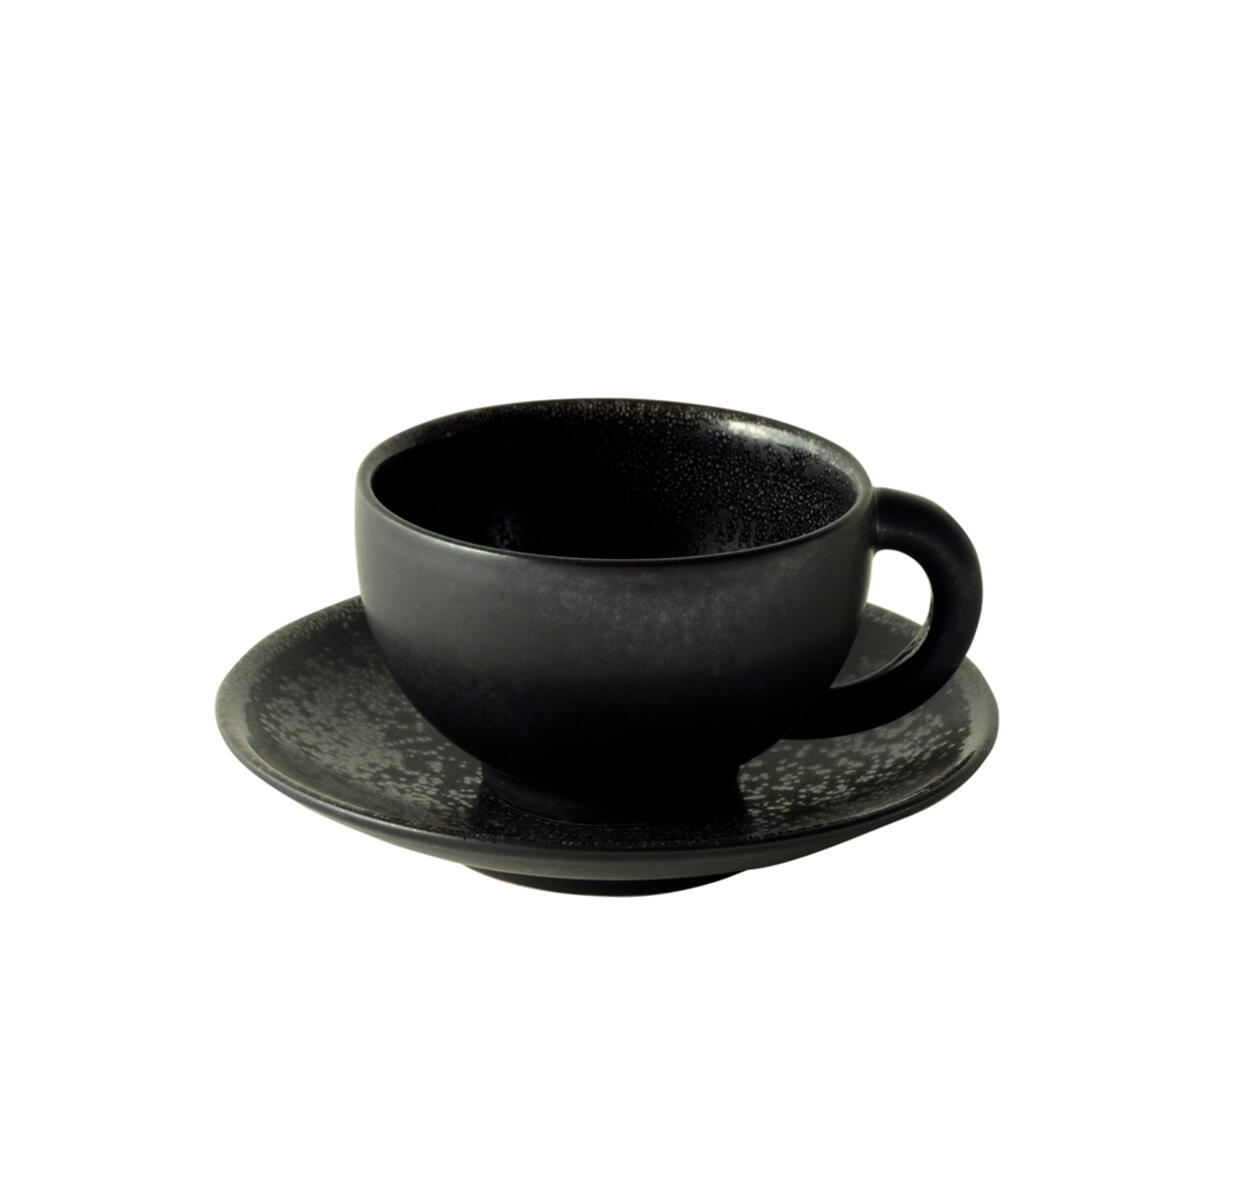 cup & saucer - l tourron céleste ceramic manufacturer